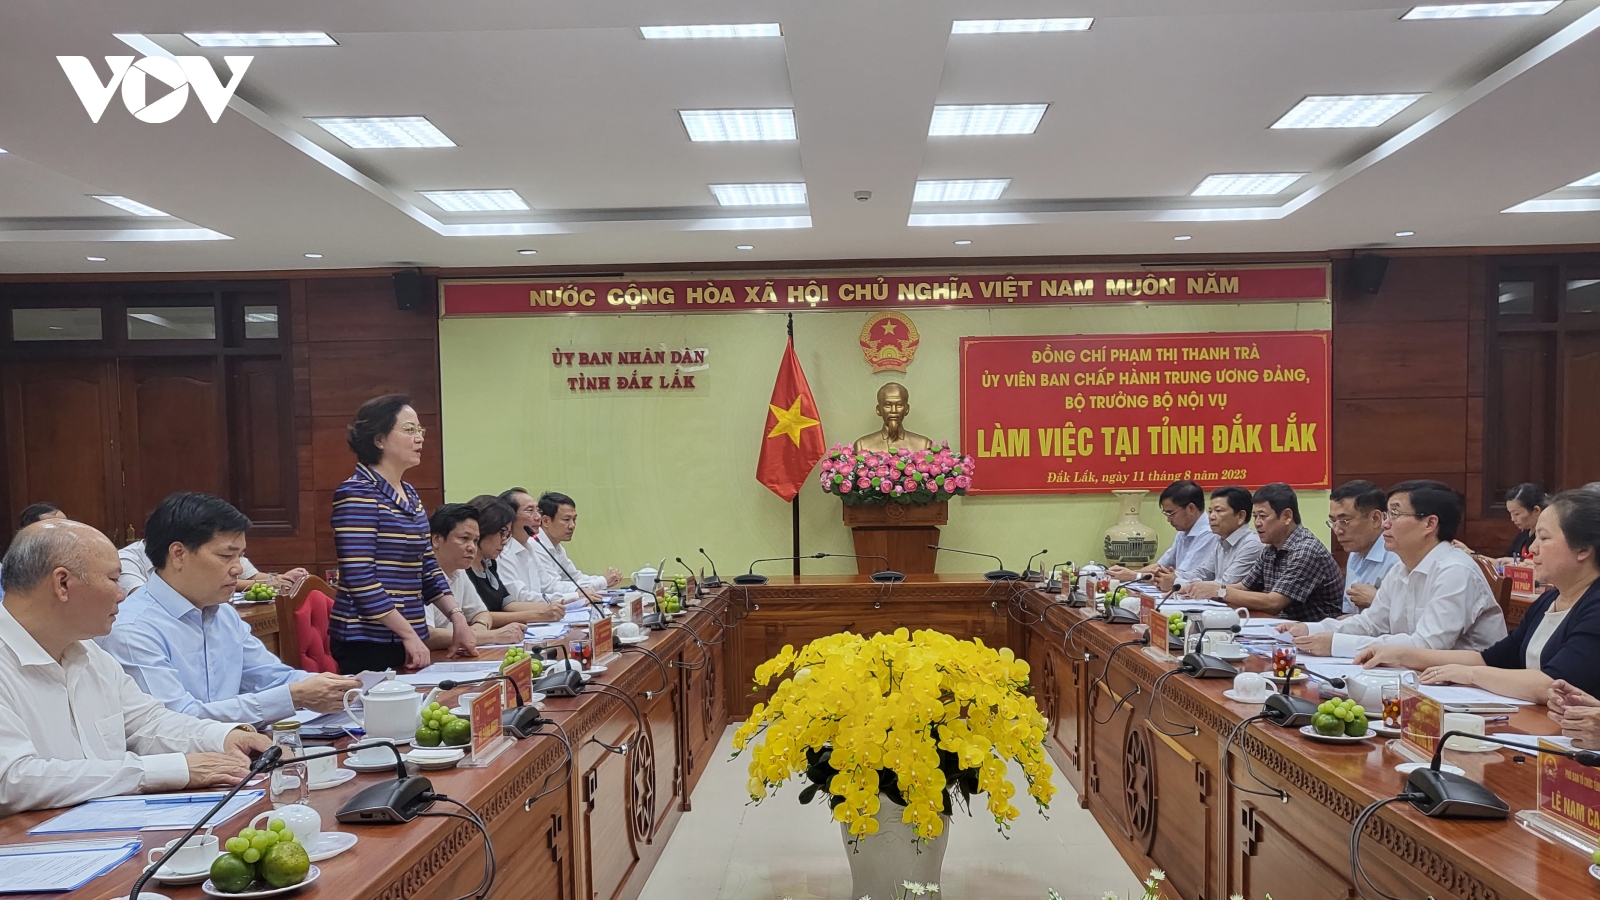 Bộ trưởng Bộ Nội vụ Phạm Thị Thanh Trà làm việc tại tỉnh Đắk Lắk